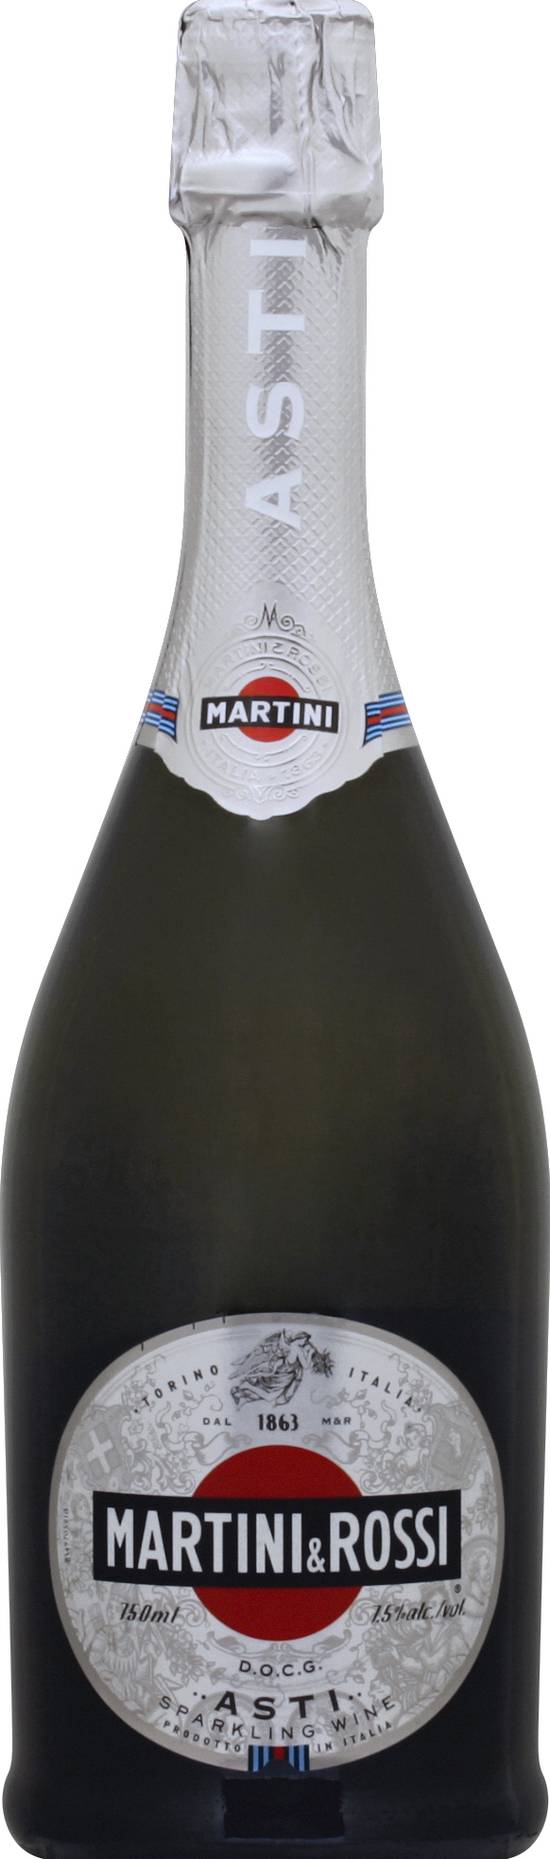 Martini & Rossi Asti Sparkling Wine (750 ml)